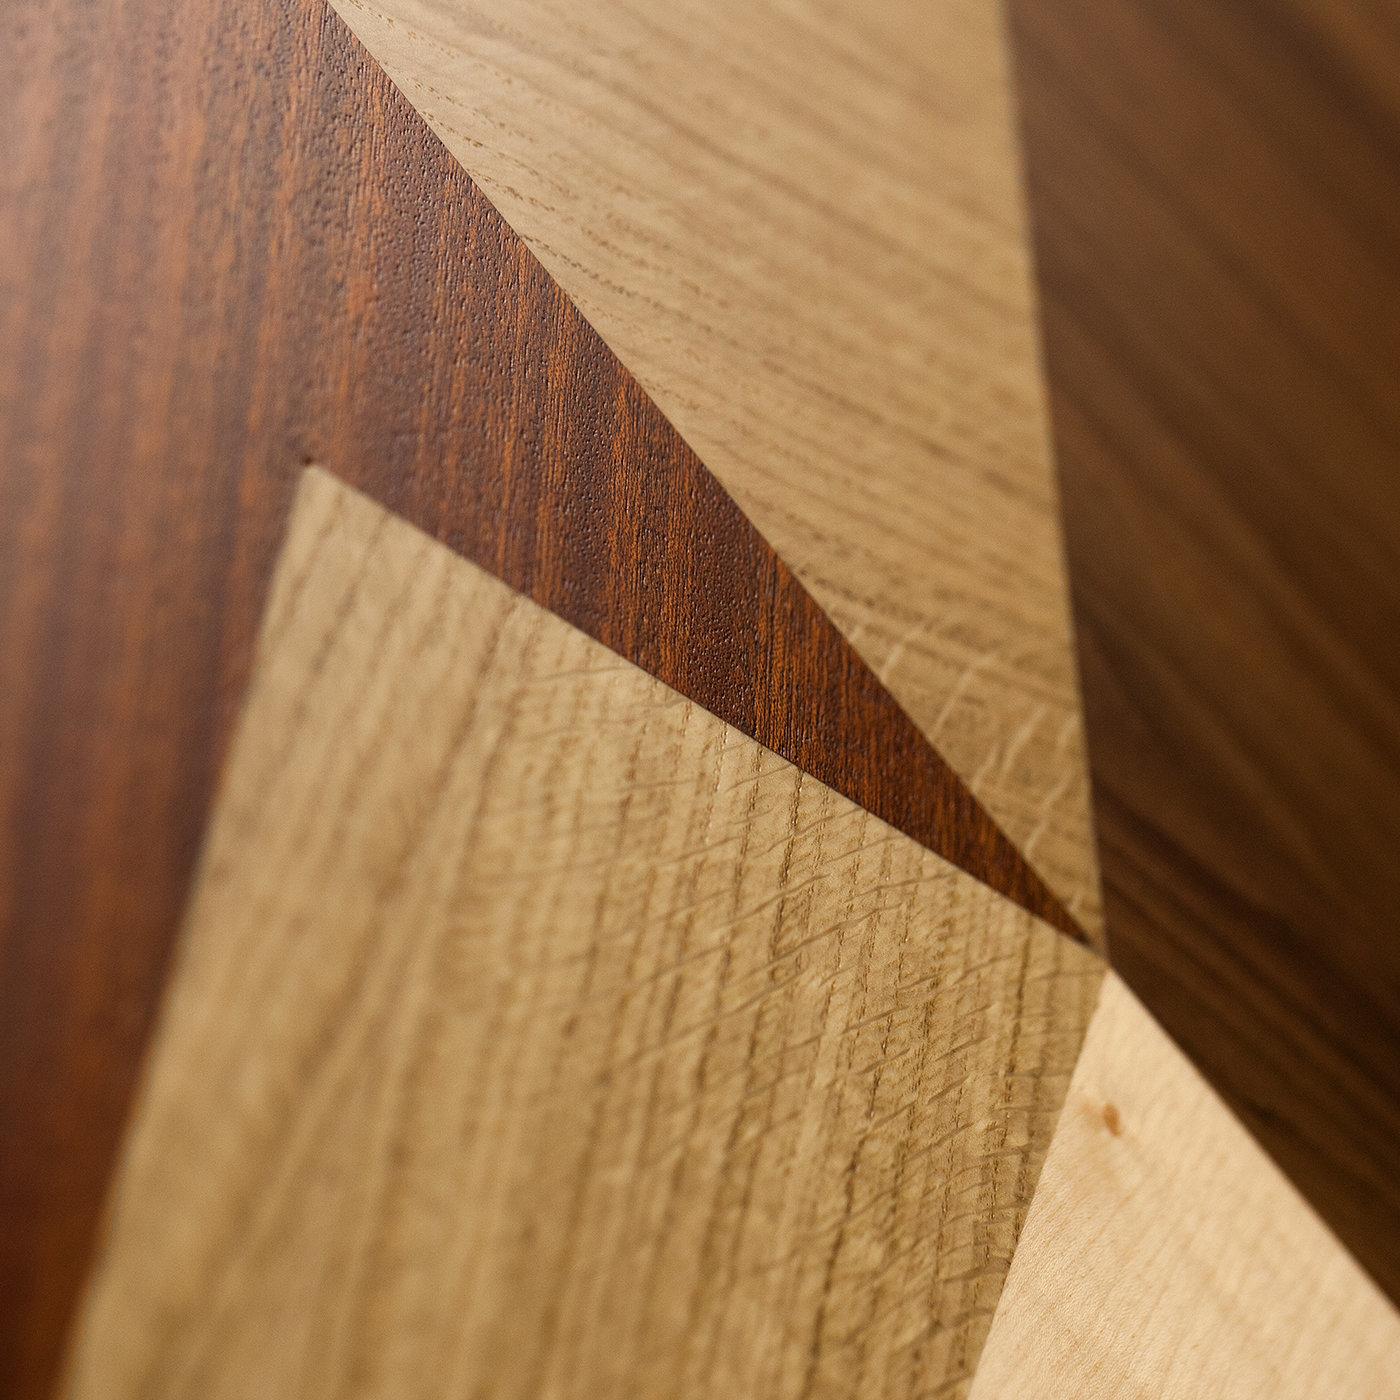 Une géométrie de lignes harmonieuses créées par des incrustations de bois précieux donne à ce panneau de bois un motif abstrait qui s'intégrera sans effort dans un intérieur moderne. L'érable blanc, le chêne européen, l'acajou, le noyer européen et